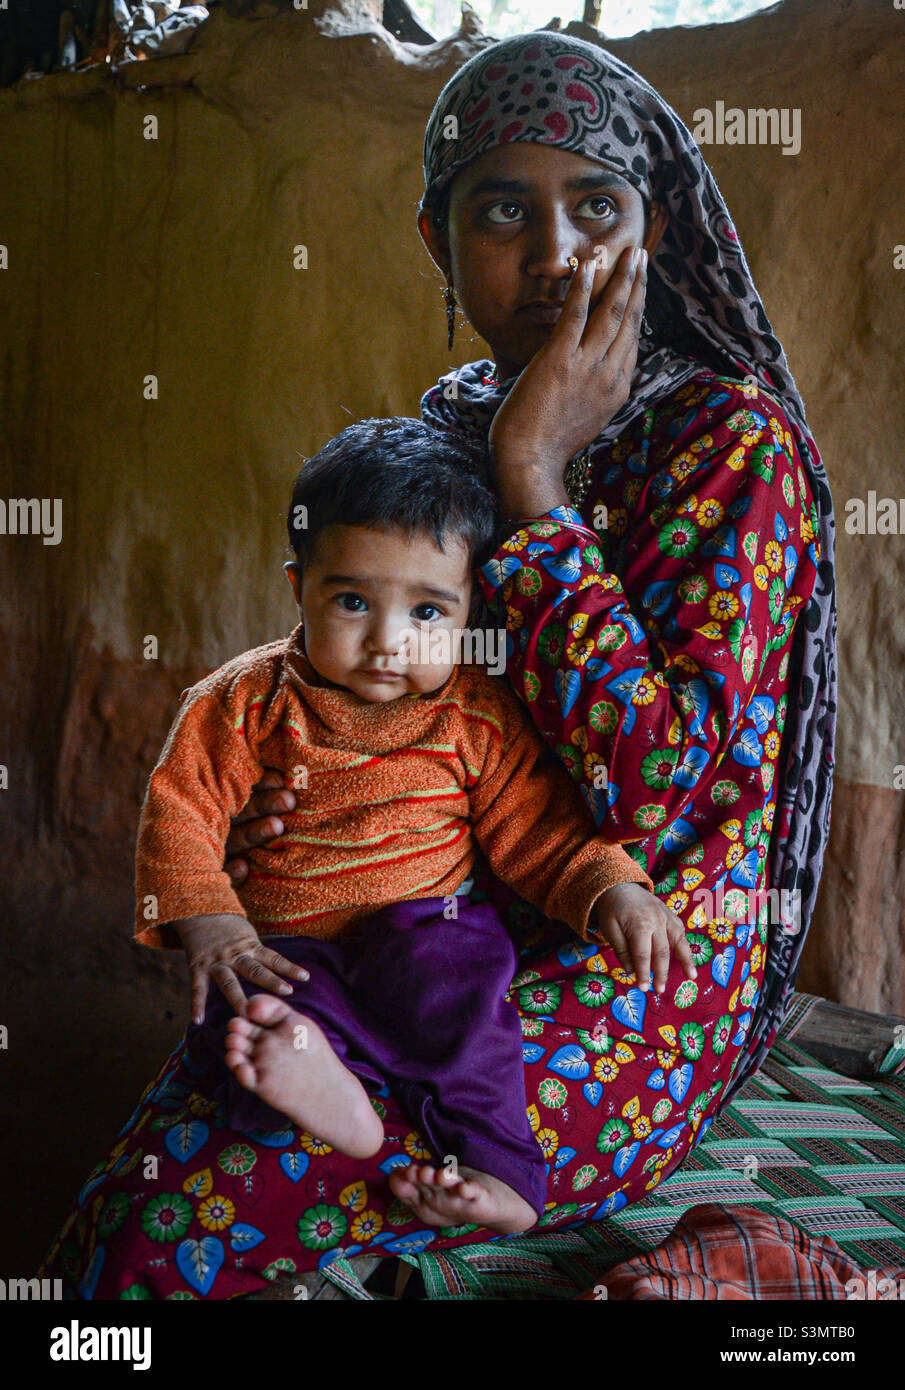 Un portrait de la mère et de l'enfant Gujjar, des portraits de l'Inde Banque D'Images